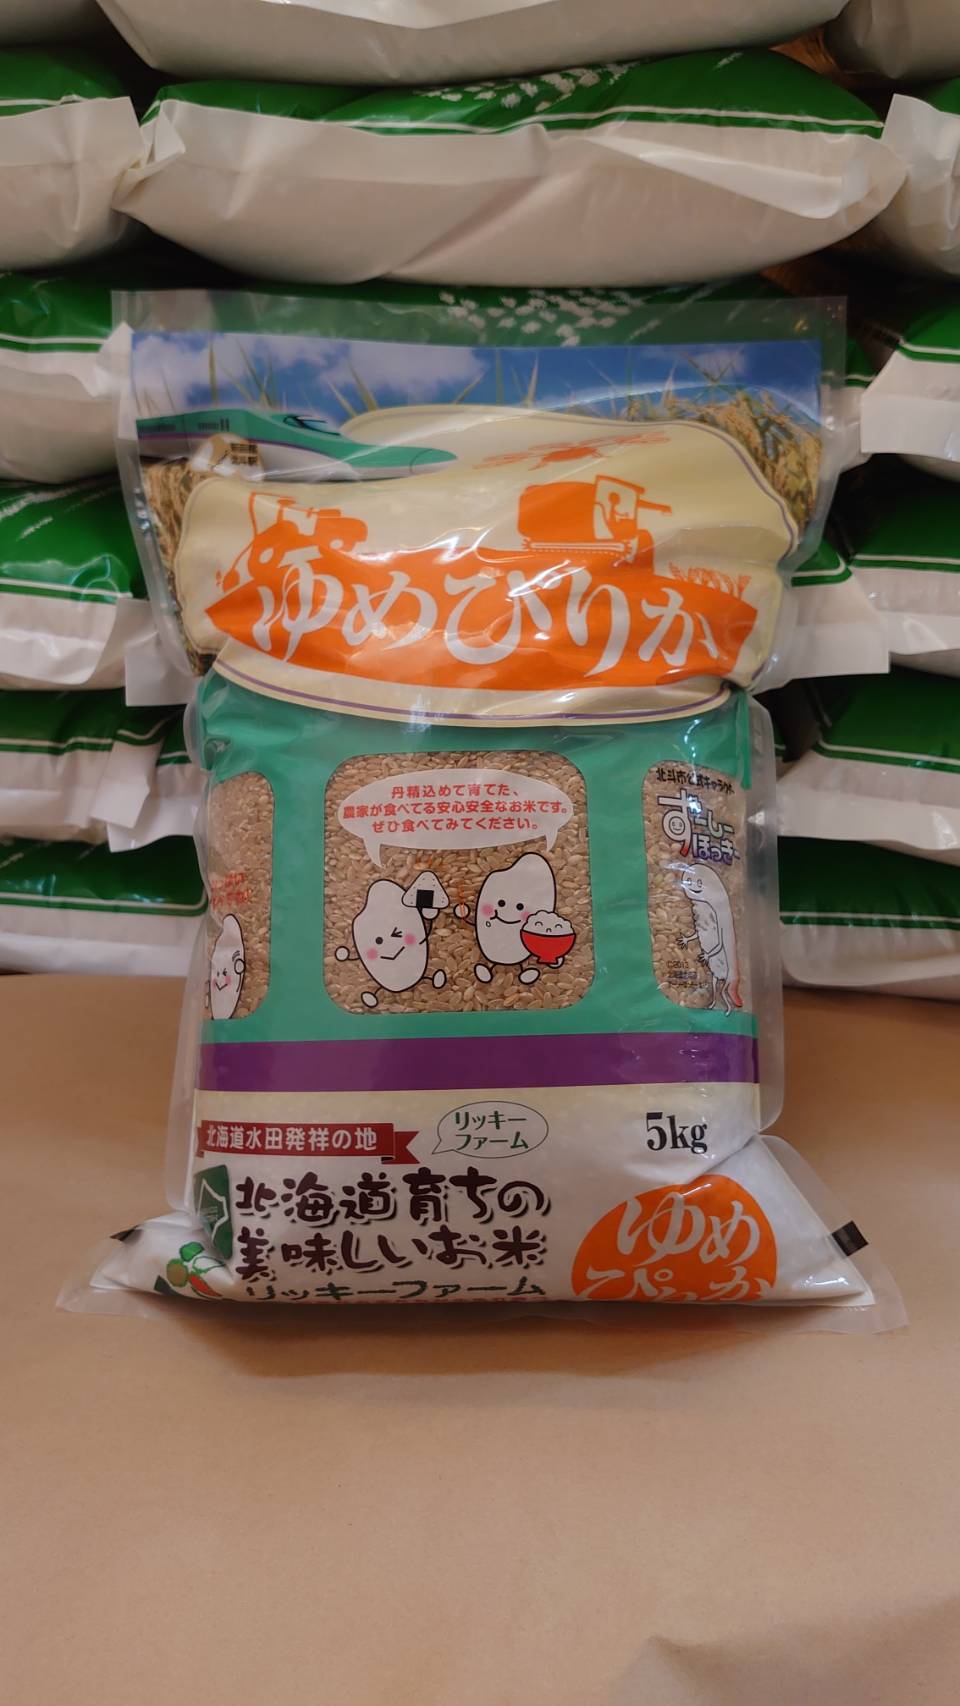 北海道産 特Aランク ゆめぴりか5kg【玄米】 HOKK012